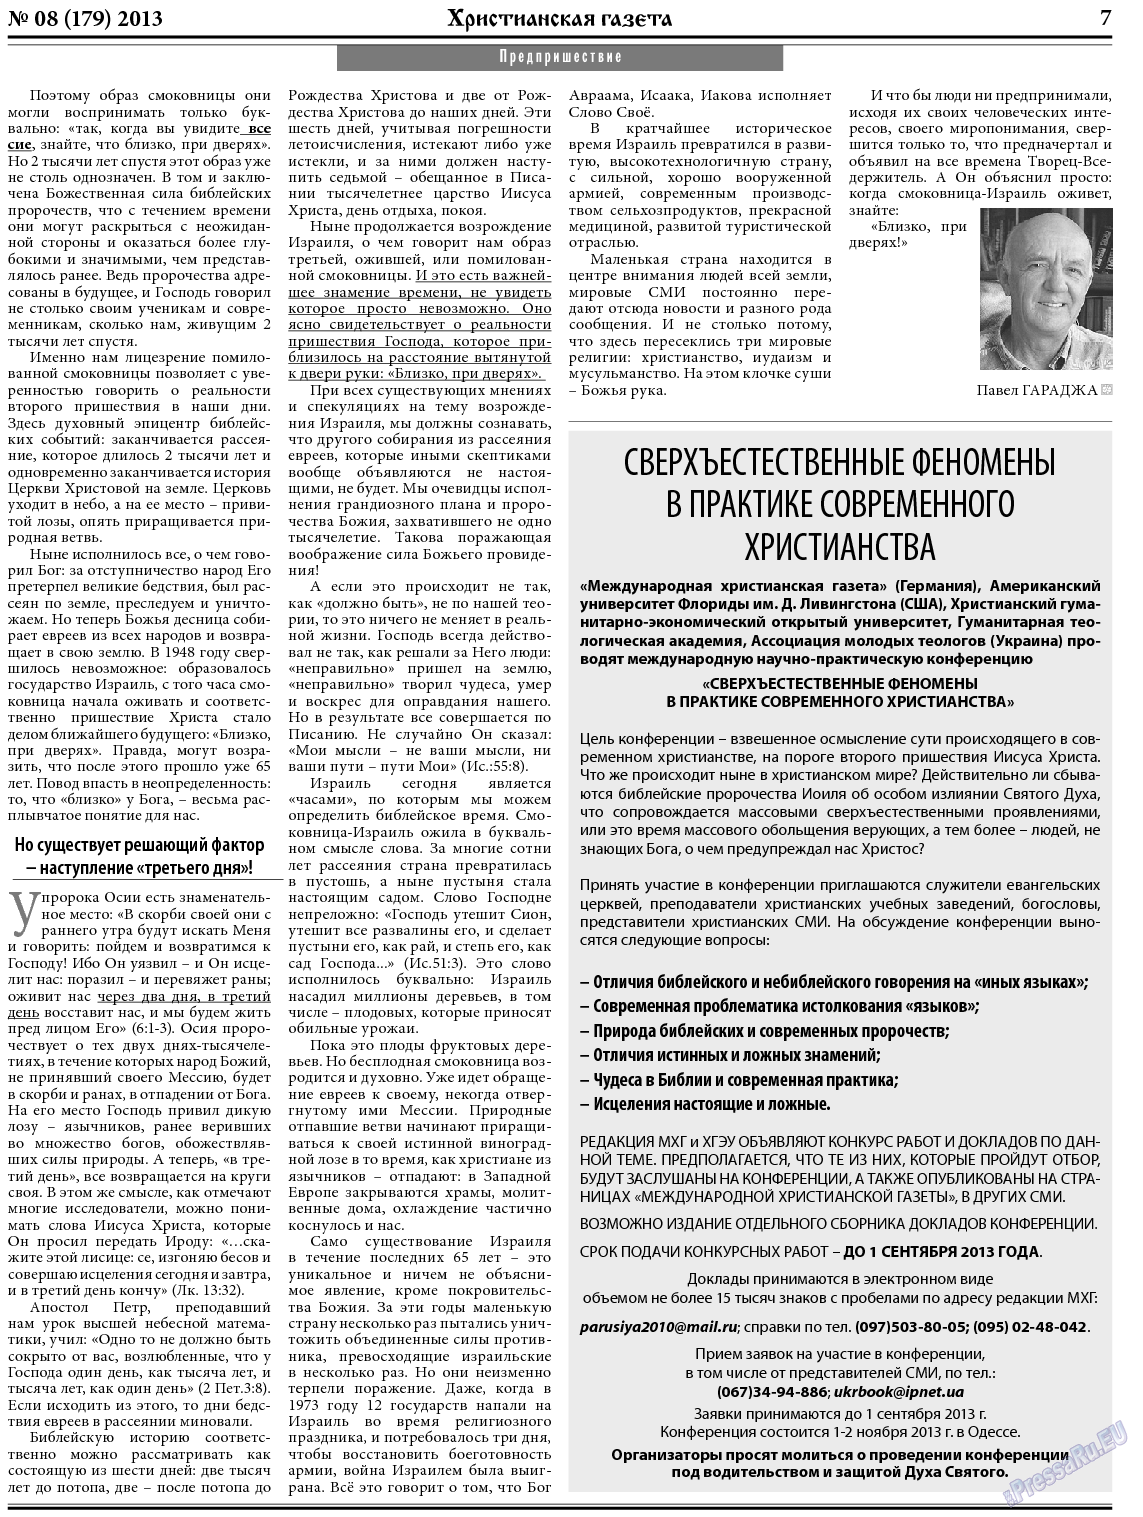 Христианская газета, газета. 2013 №8 стр.7